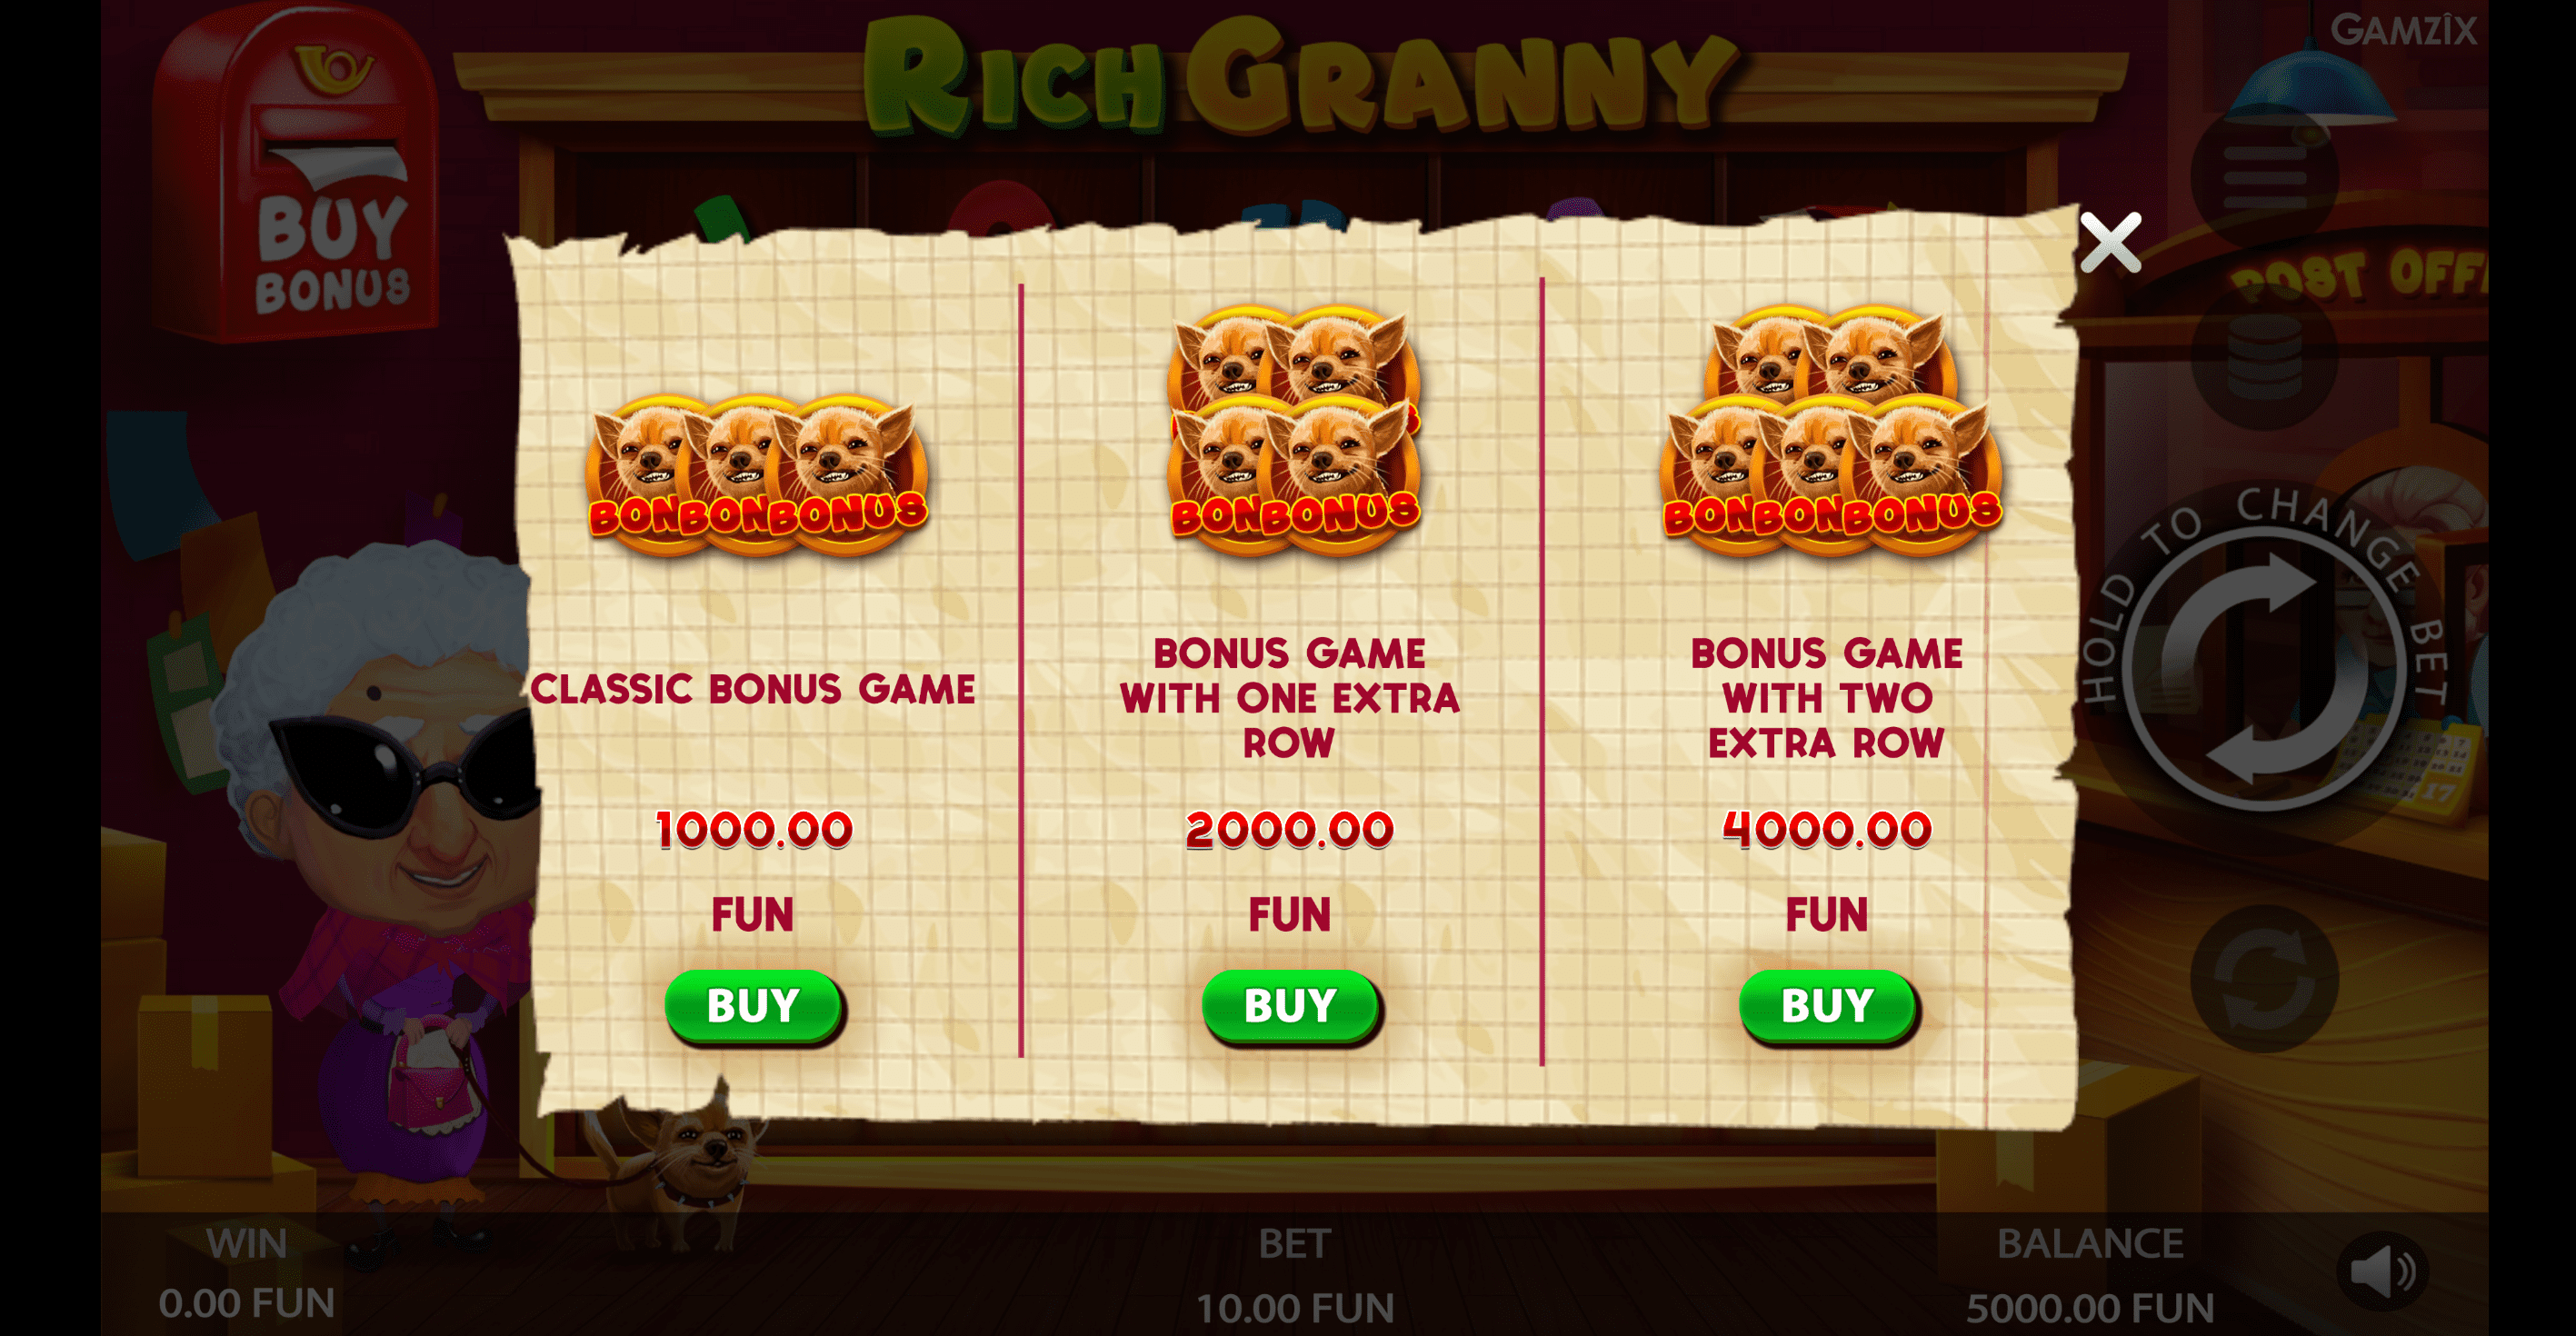 Rich Granny Spielablauf